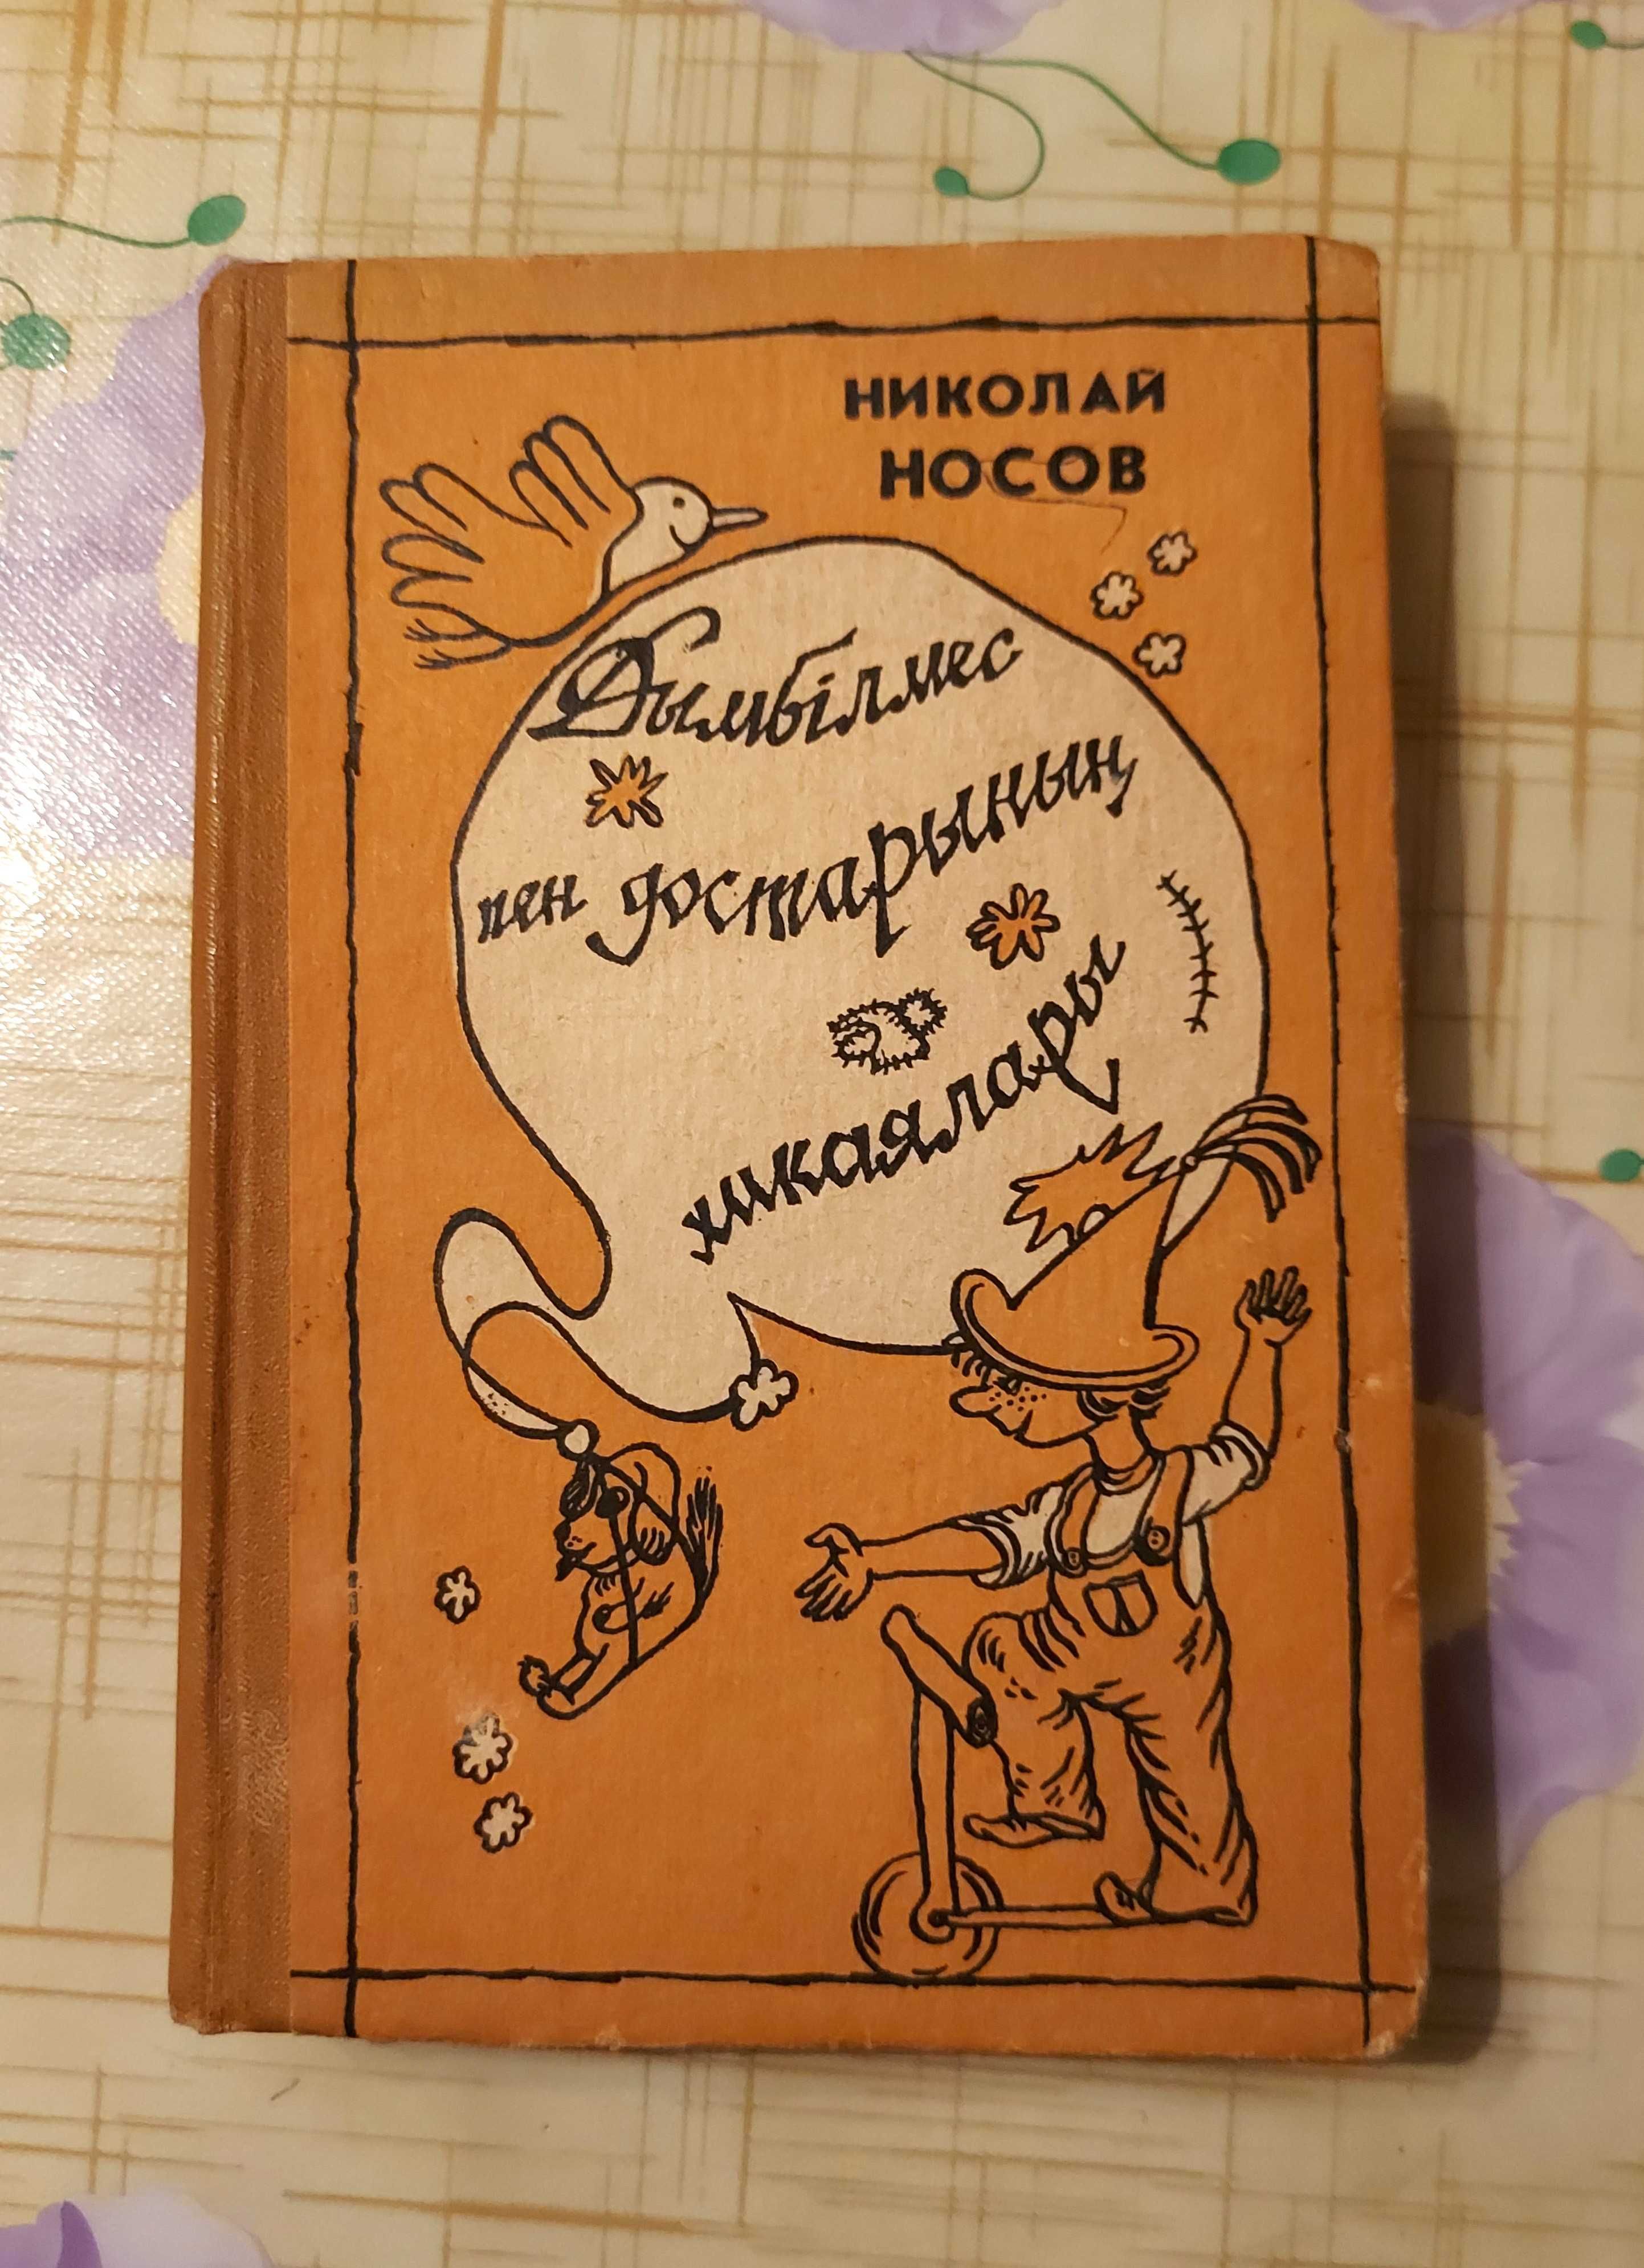 Н. Носов «Приключения Незнайки и его друзей» на казахском языке